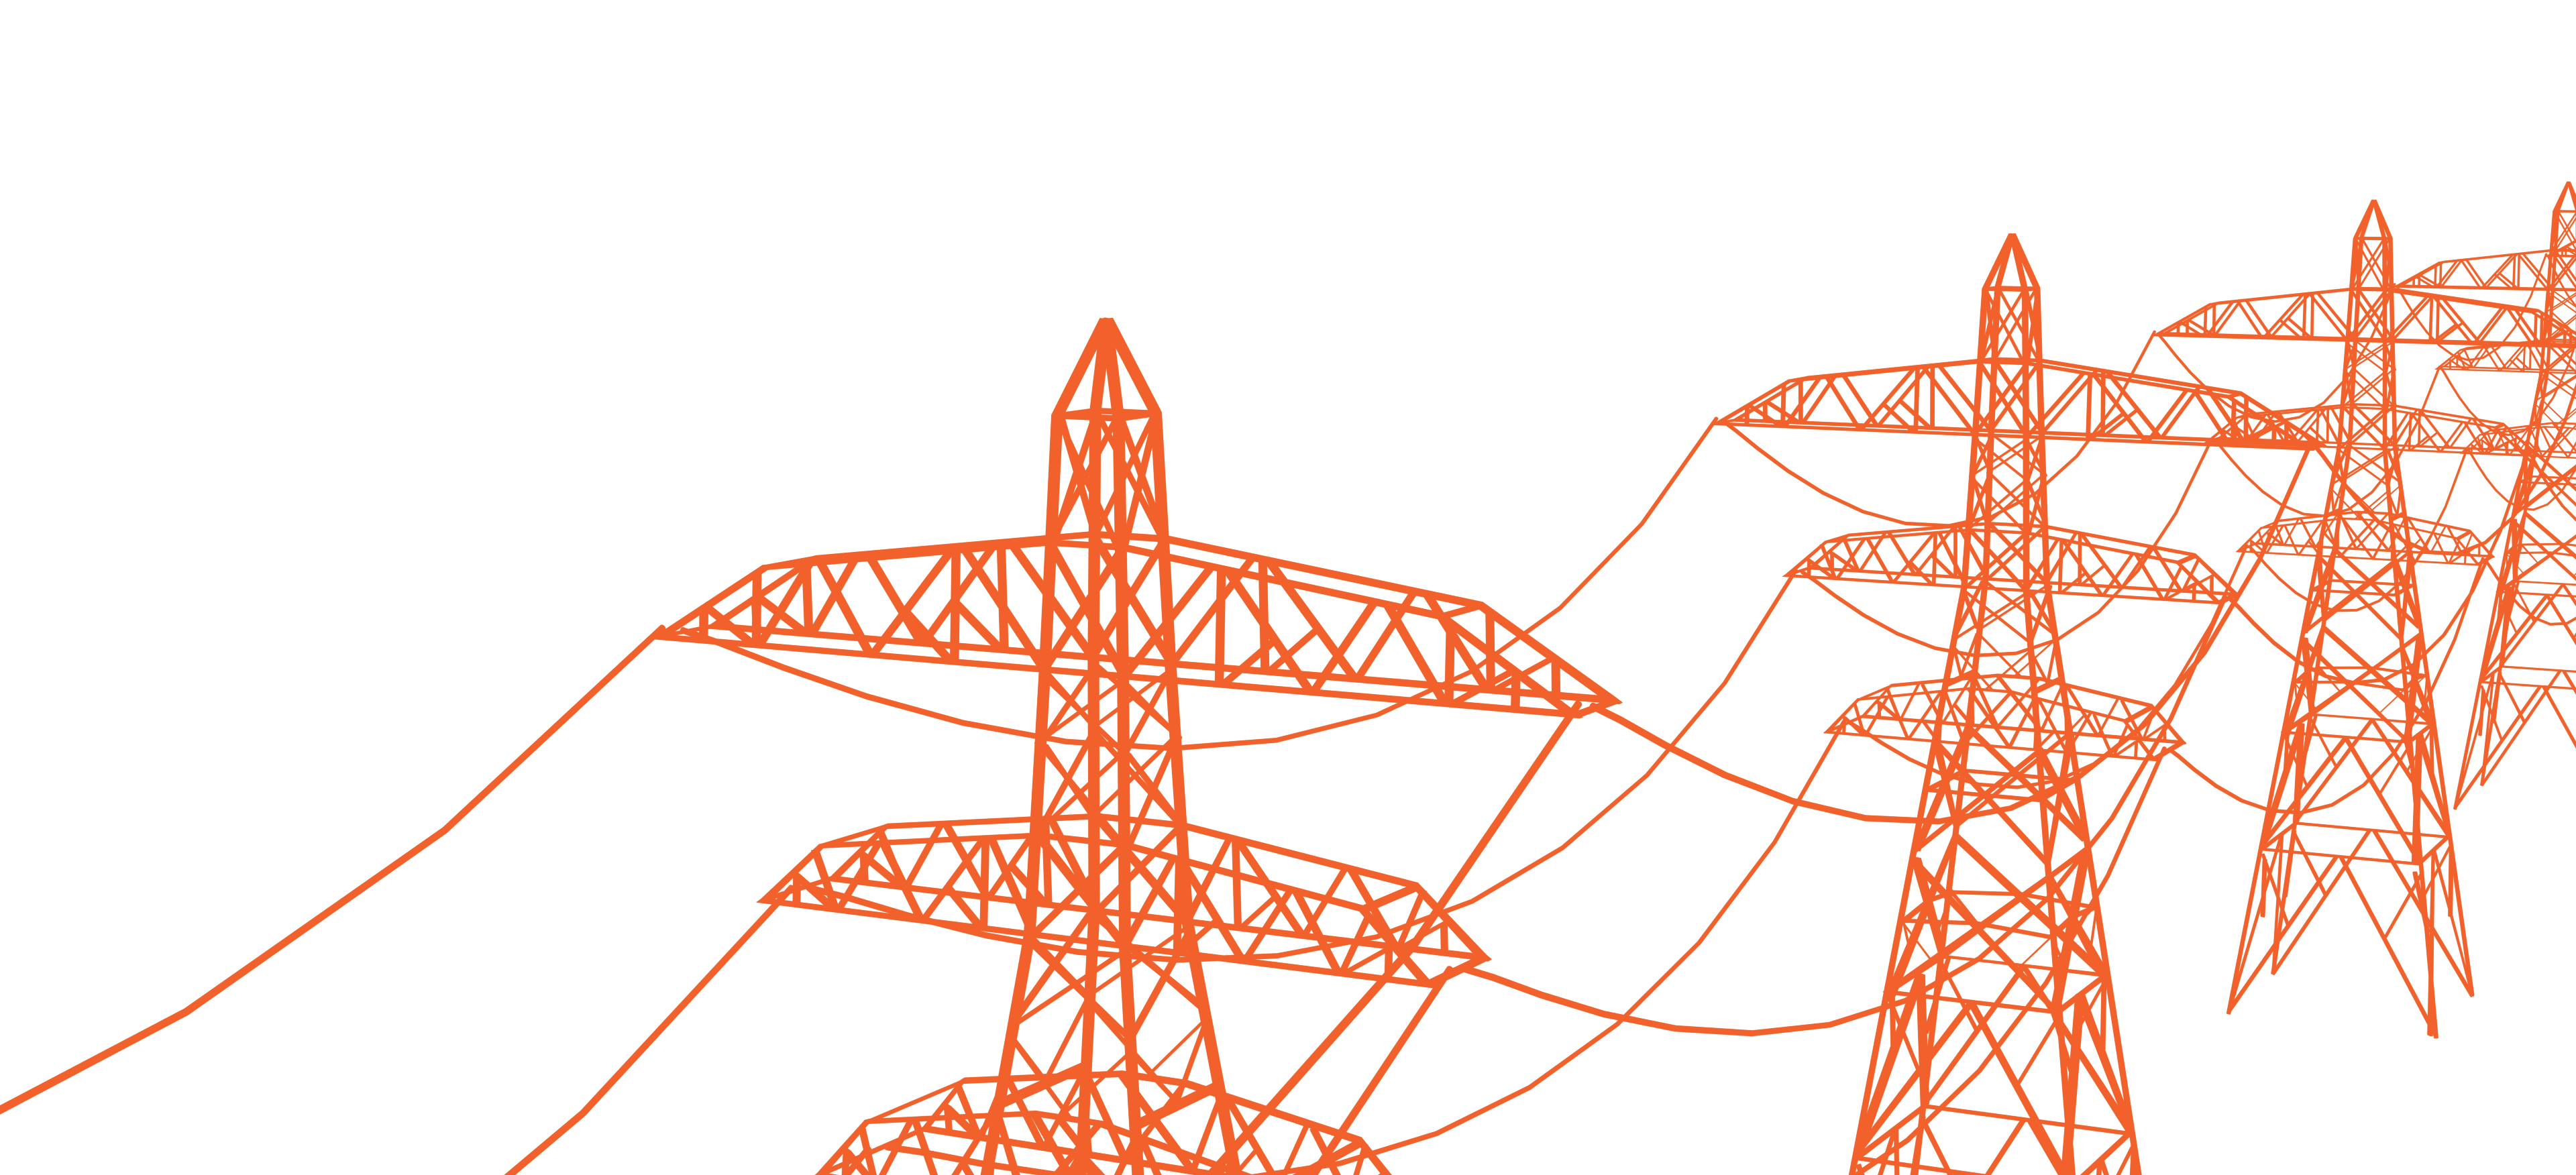 Orange wireframe of a powerline